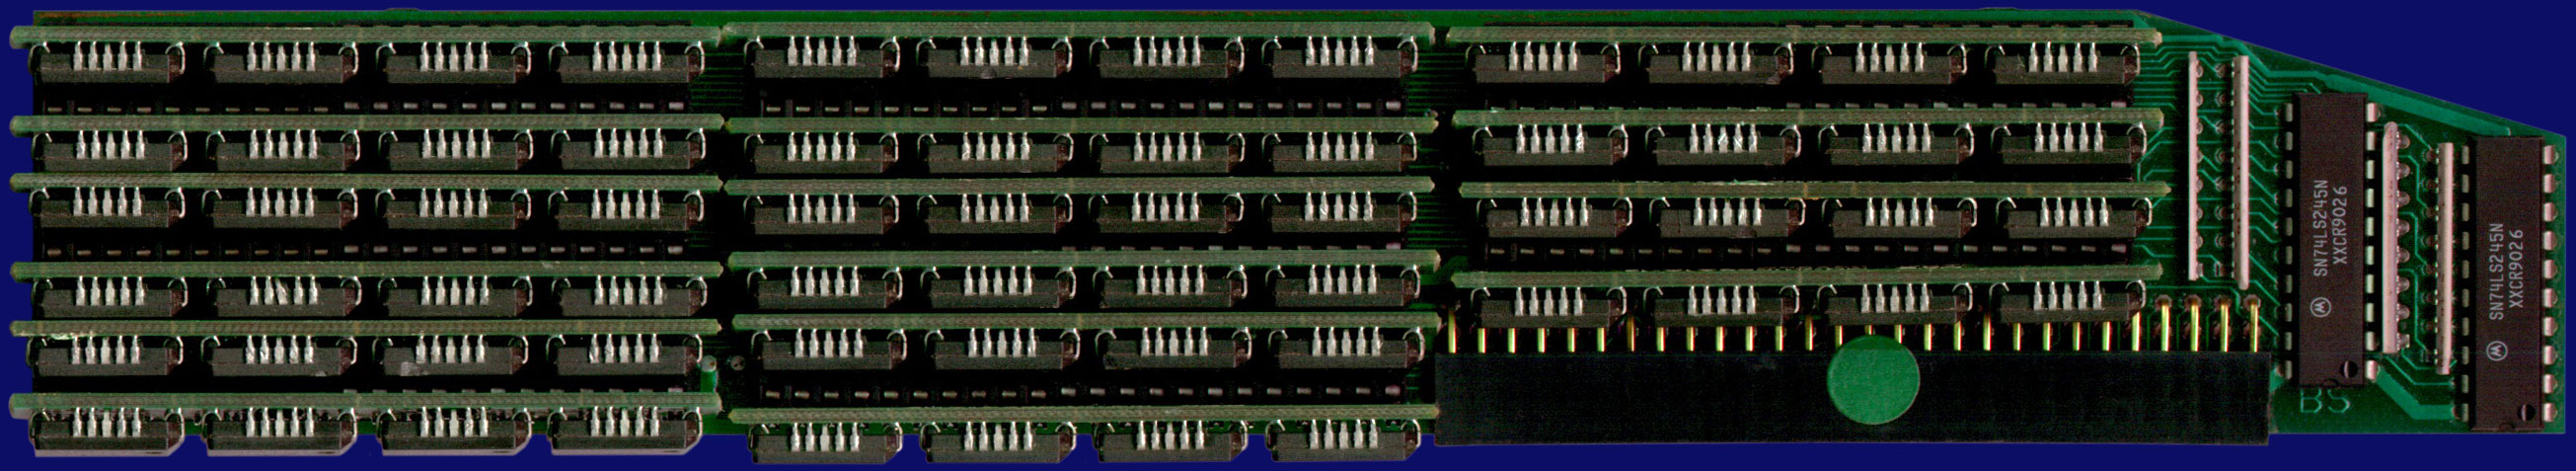 3-State MegaMix 500 - RAM-Karte, Vorderseite